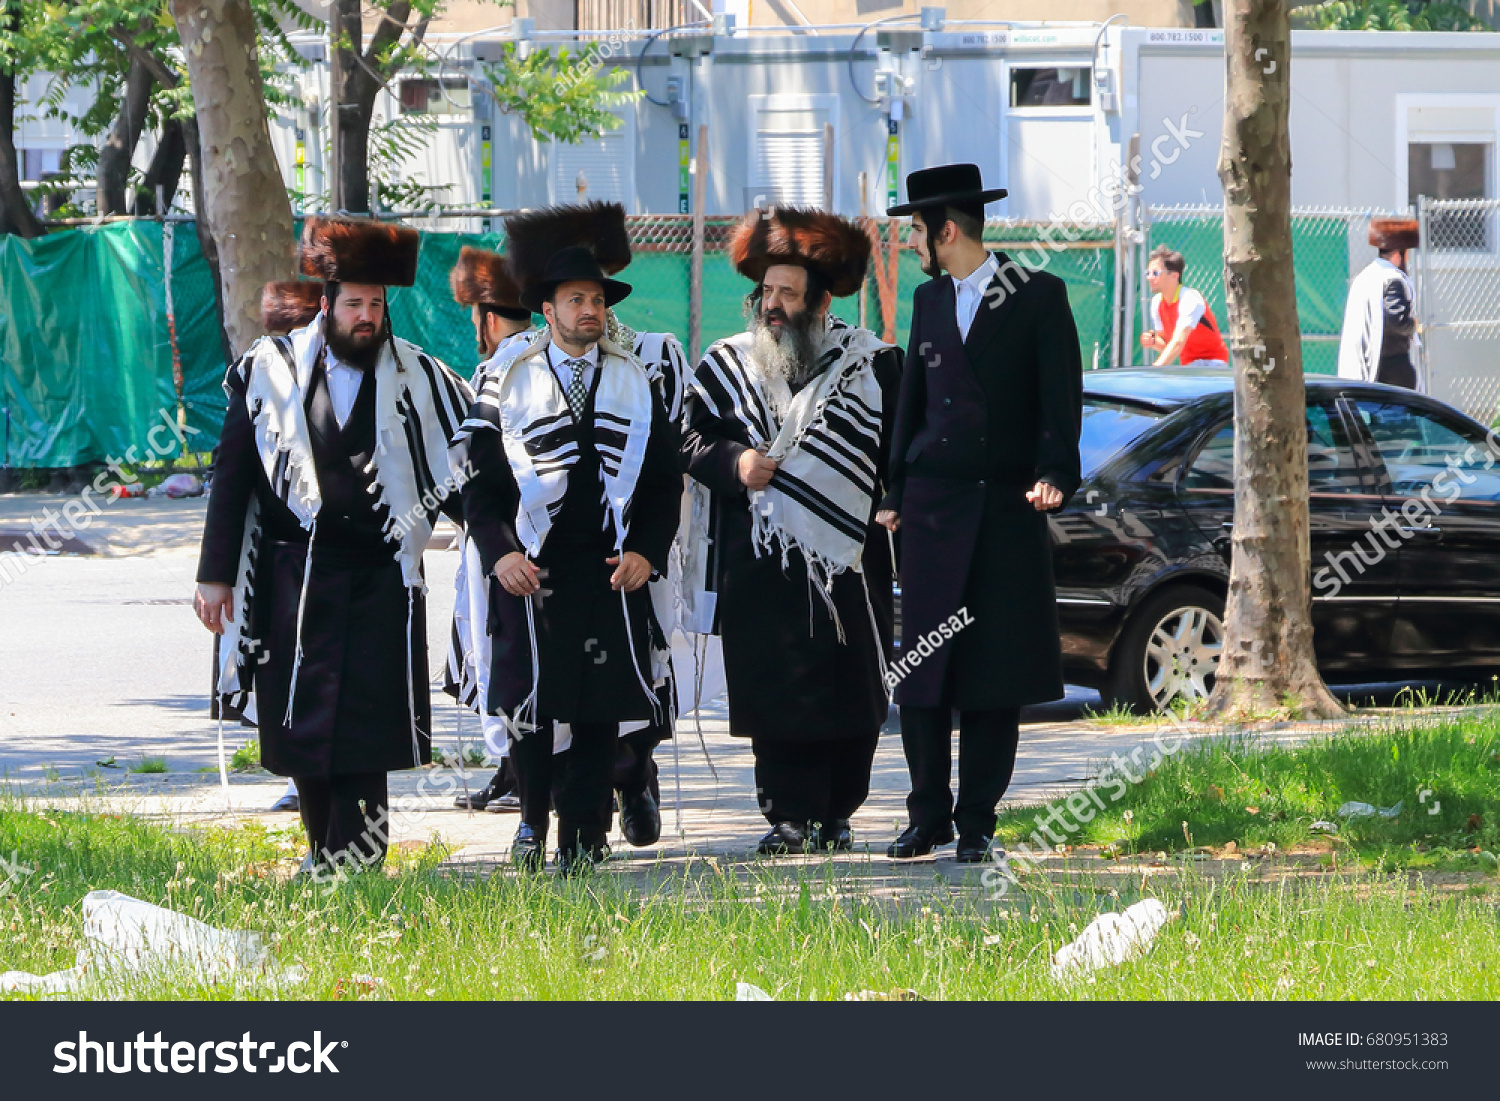 Еврейская национальная область. Национальный костюм Израиля.